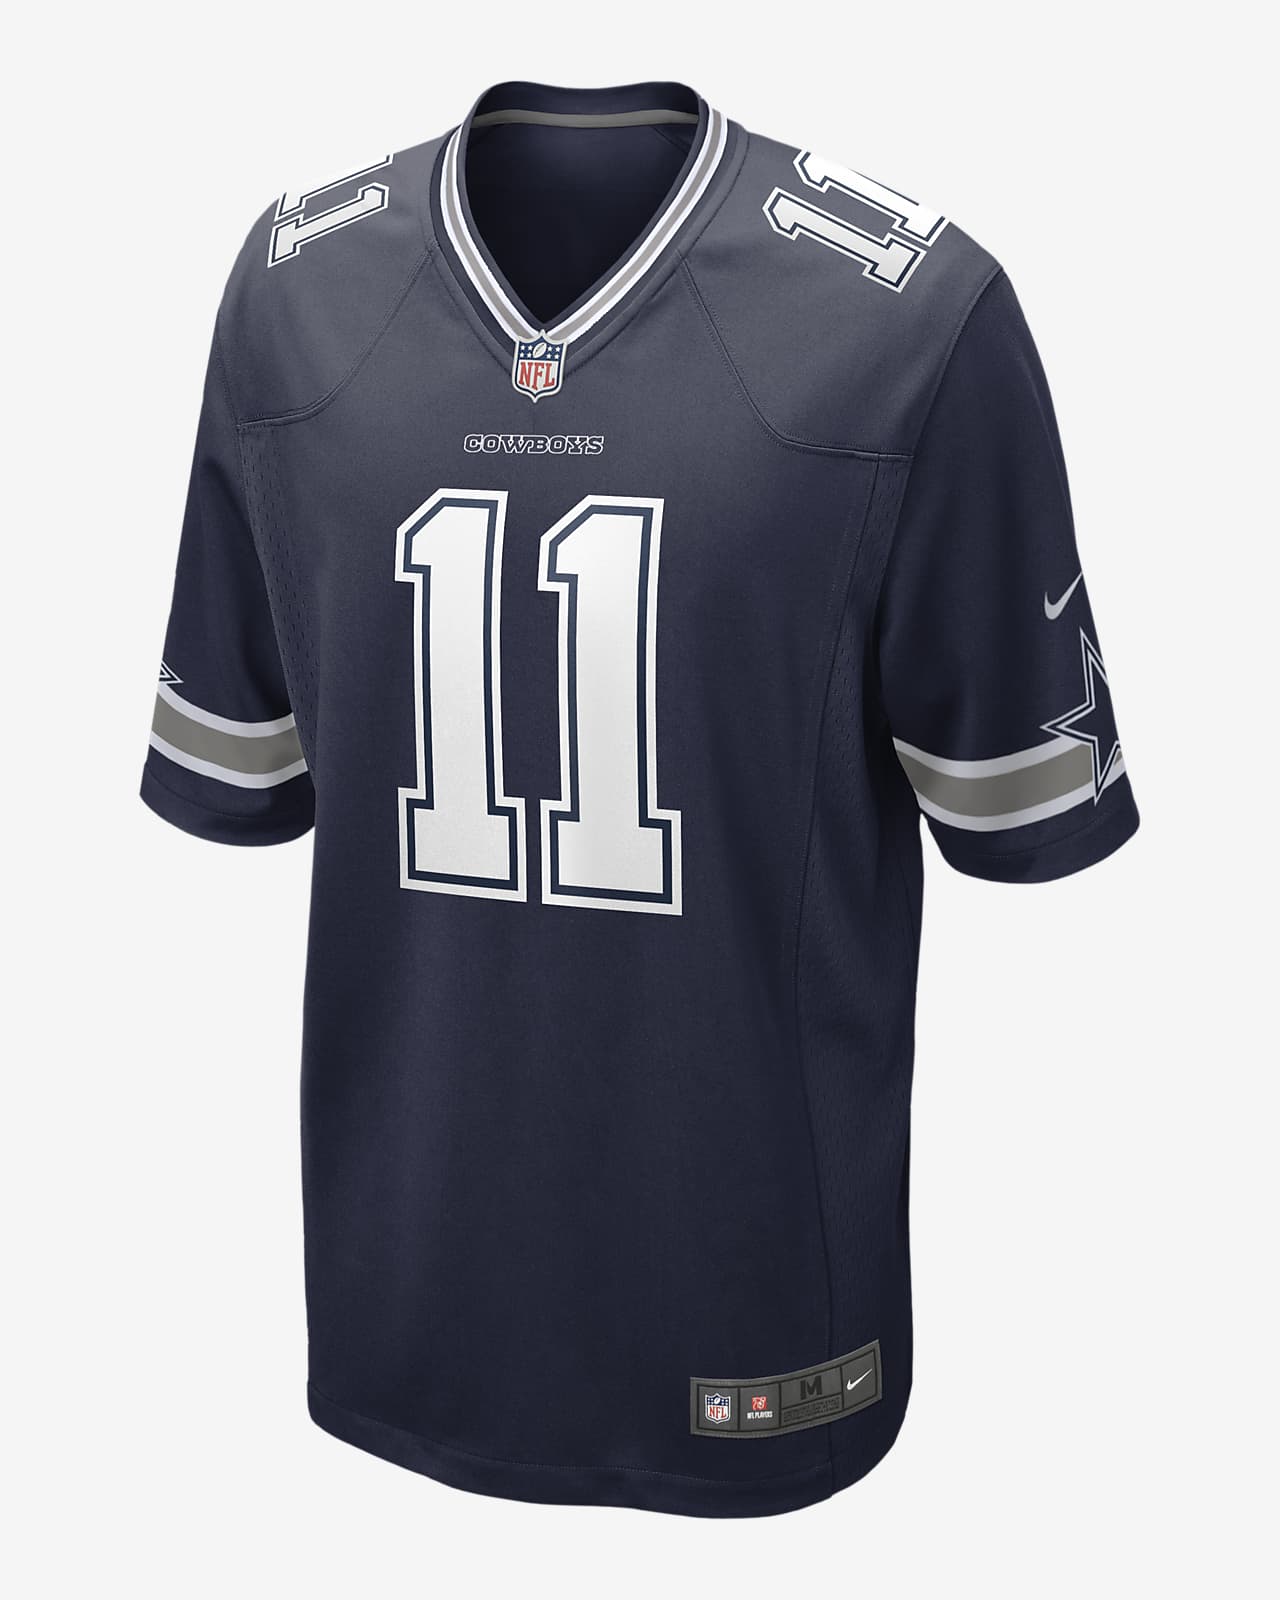 Dallas Cowboys Apparel, Cowboys Gear, & Official Dallas Cowboys Merchandise  at NFL Shop